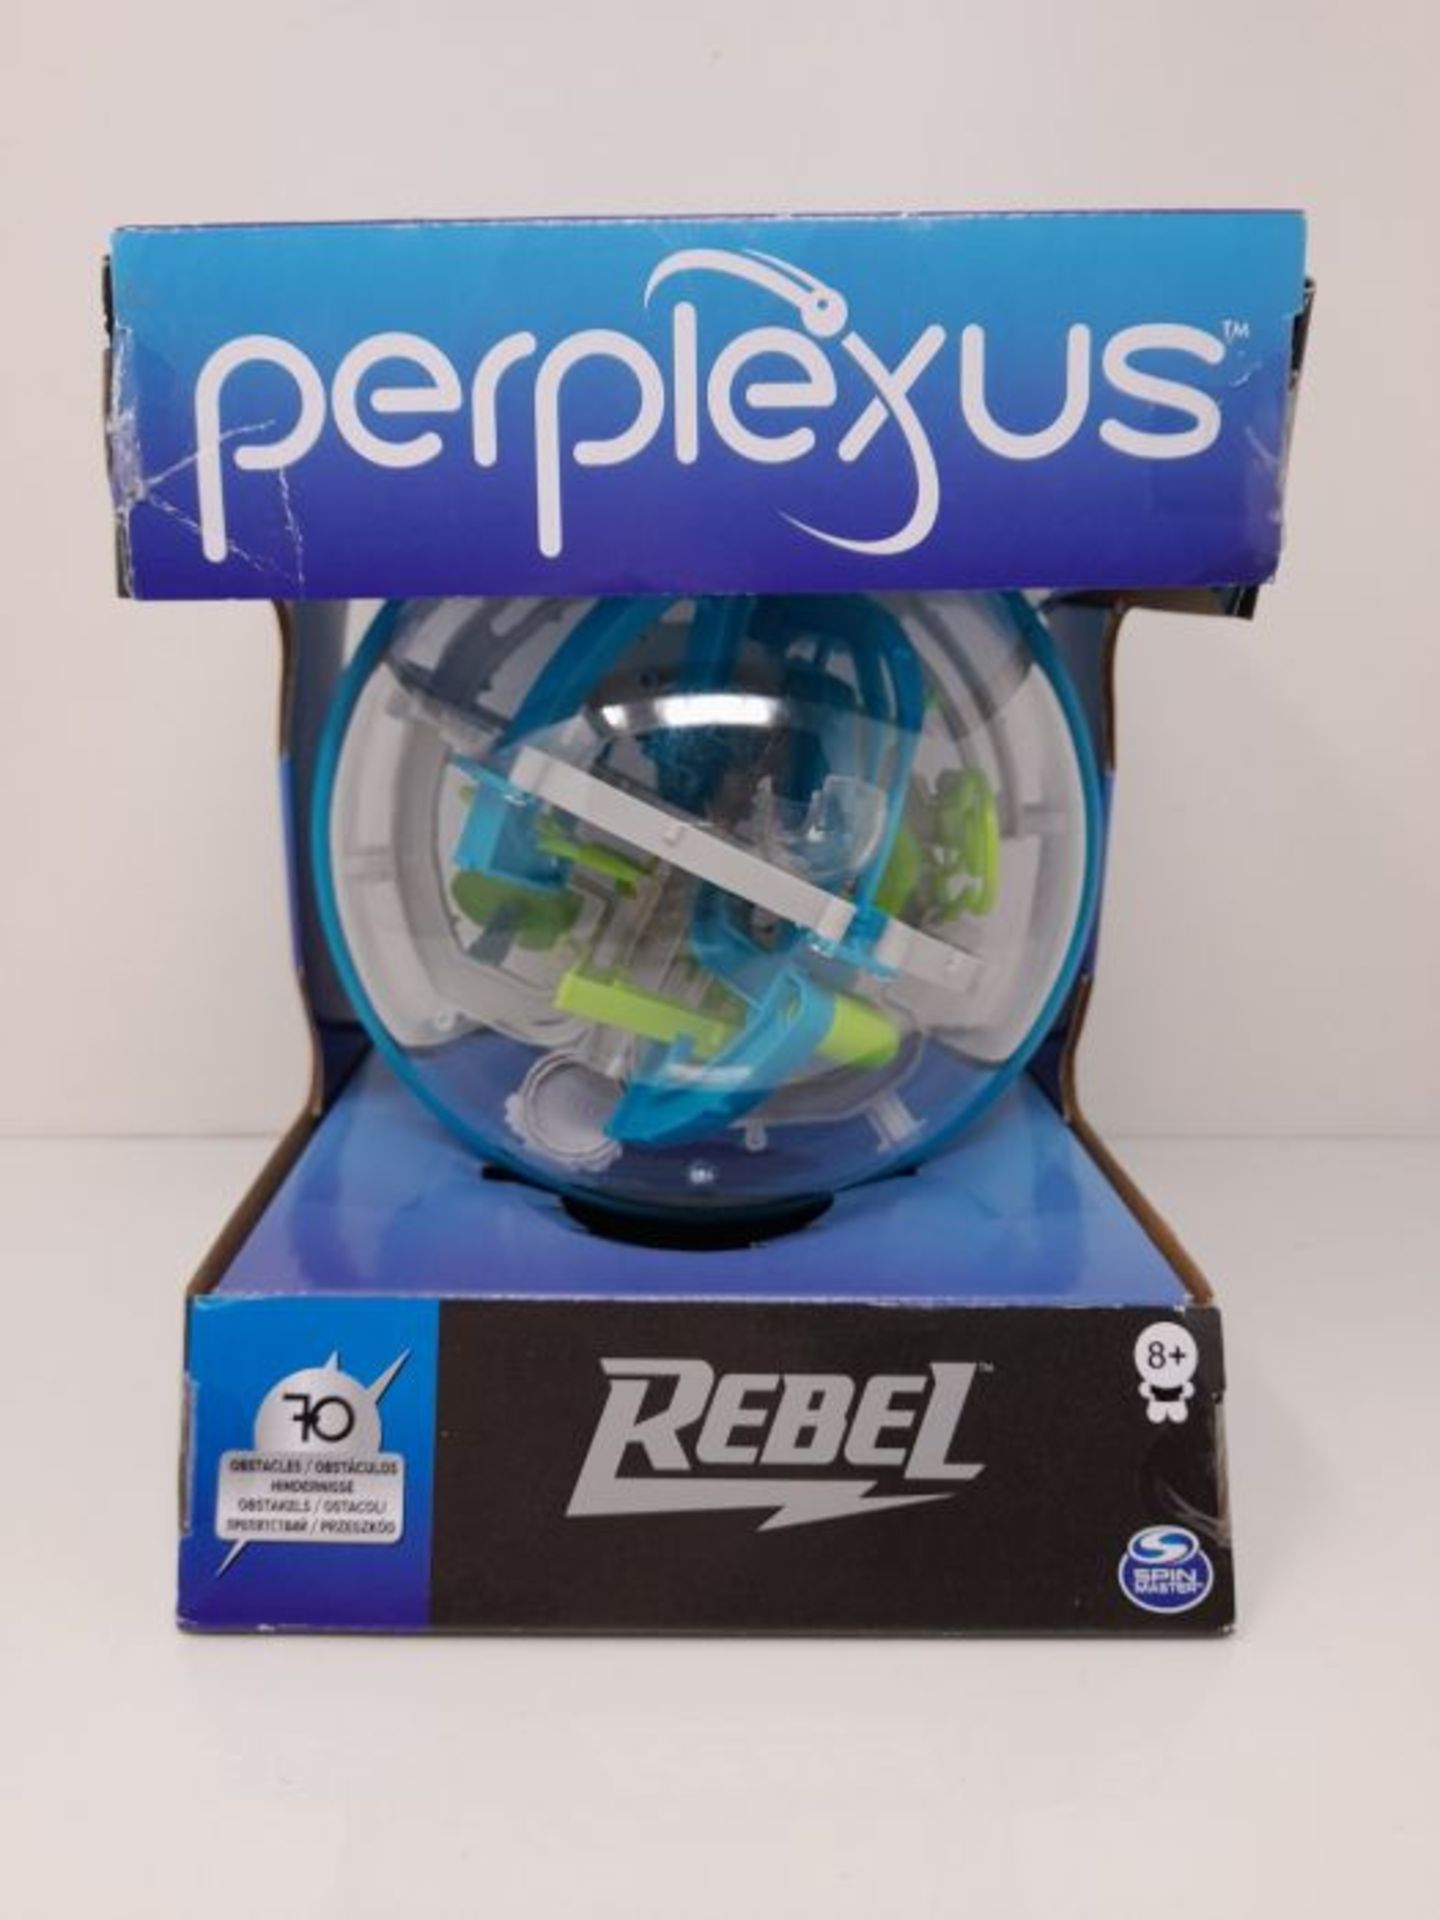 Perplexus Rebel, 3D-Labyrinth mit 70 Hindernissen - Image 2 of 3